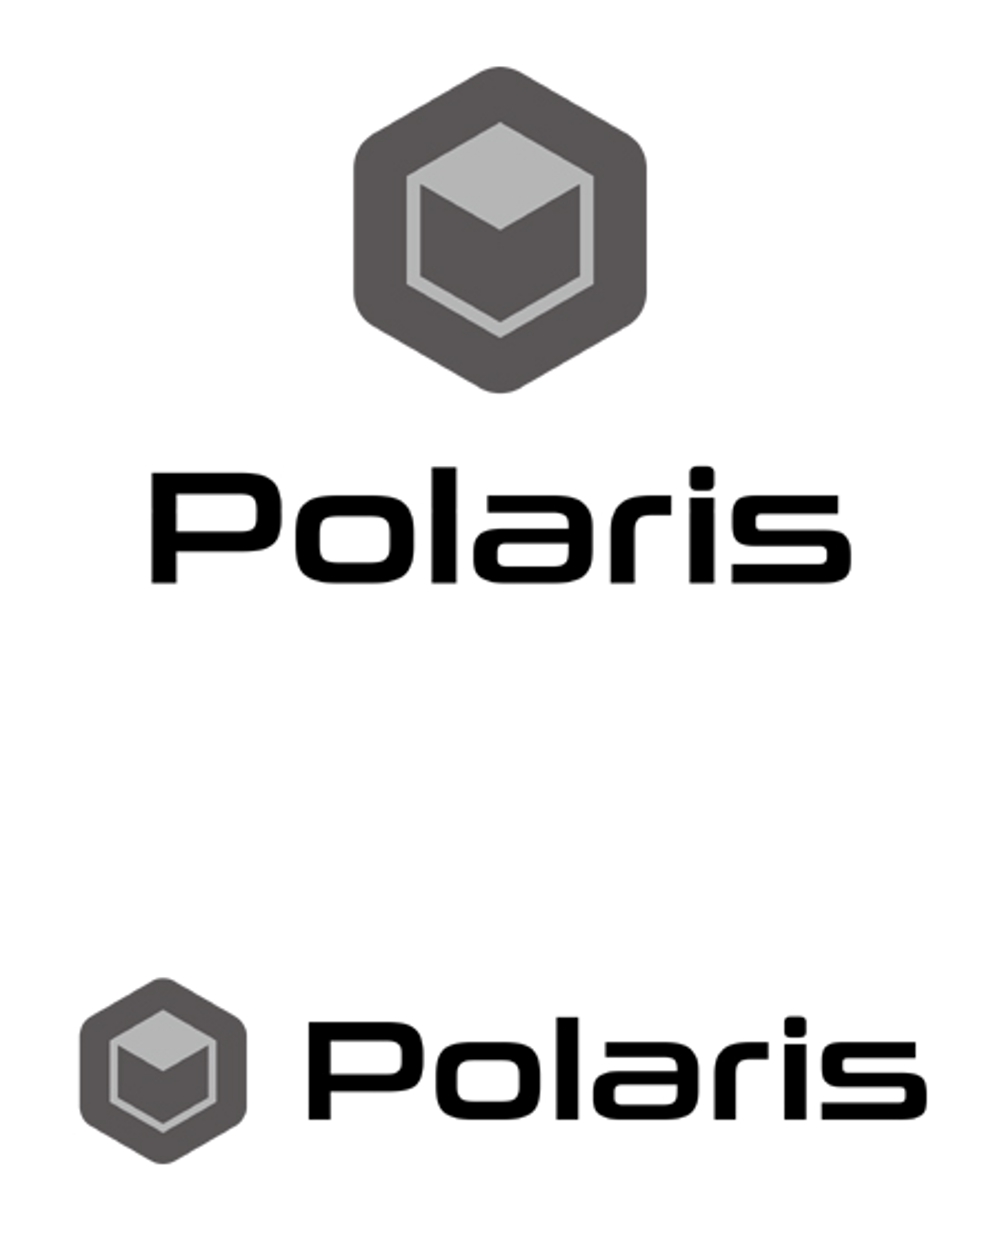 Polaris -2k.JPG